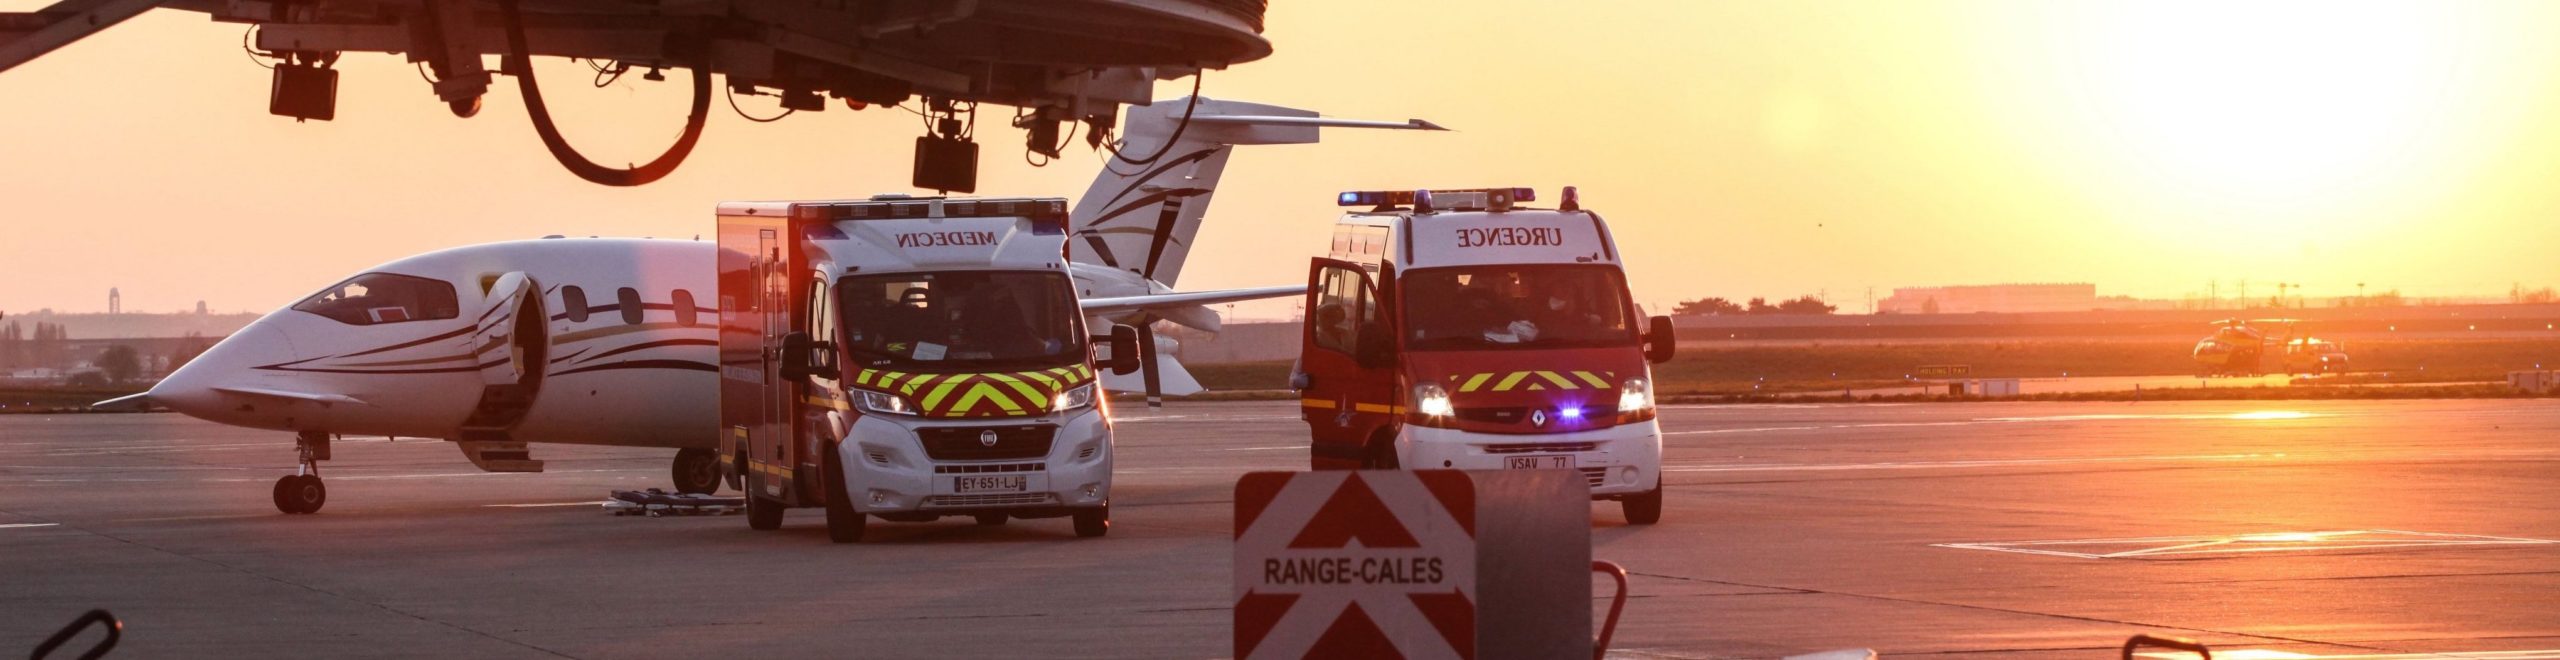 Évacuation sanitaire en jet privé à l'aéroport de Paris Orly